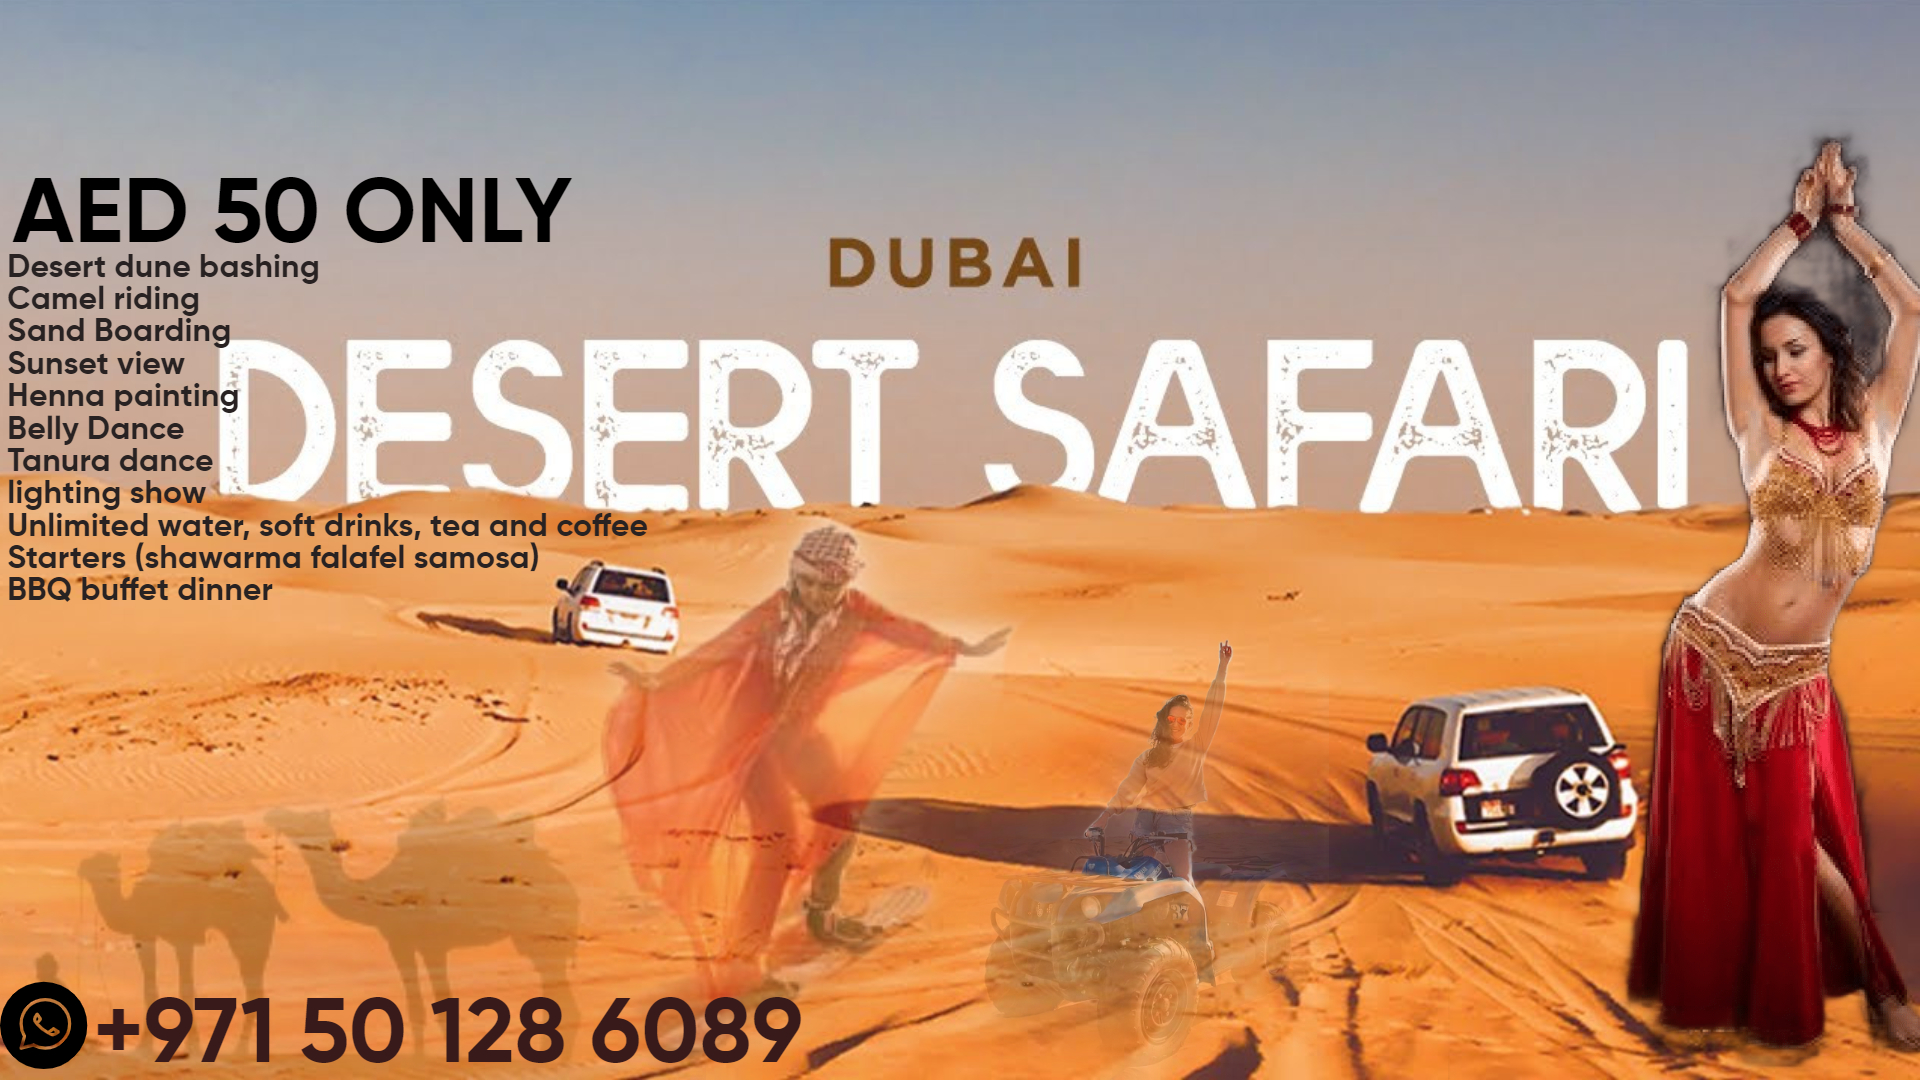 – Best Offers in Dubai